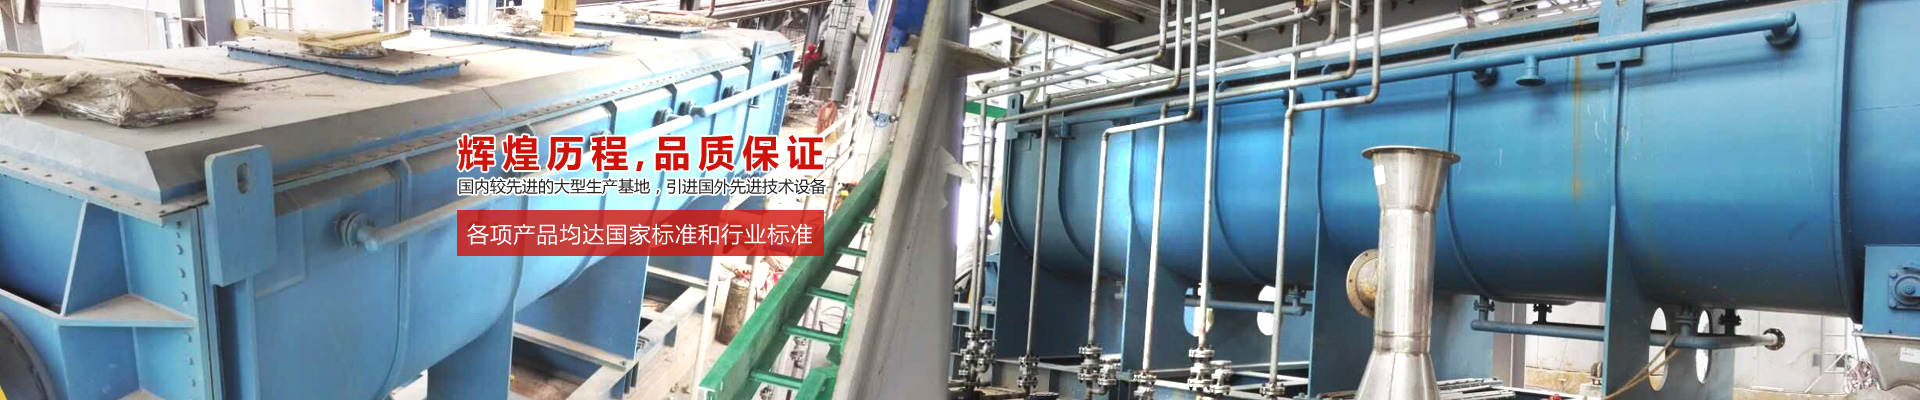 Changzhou Erle Drying Equipment Co.,Ltd.